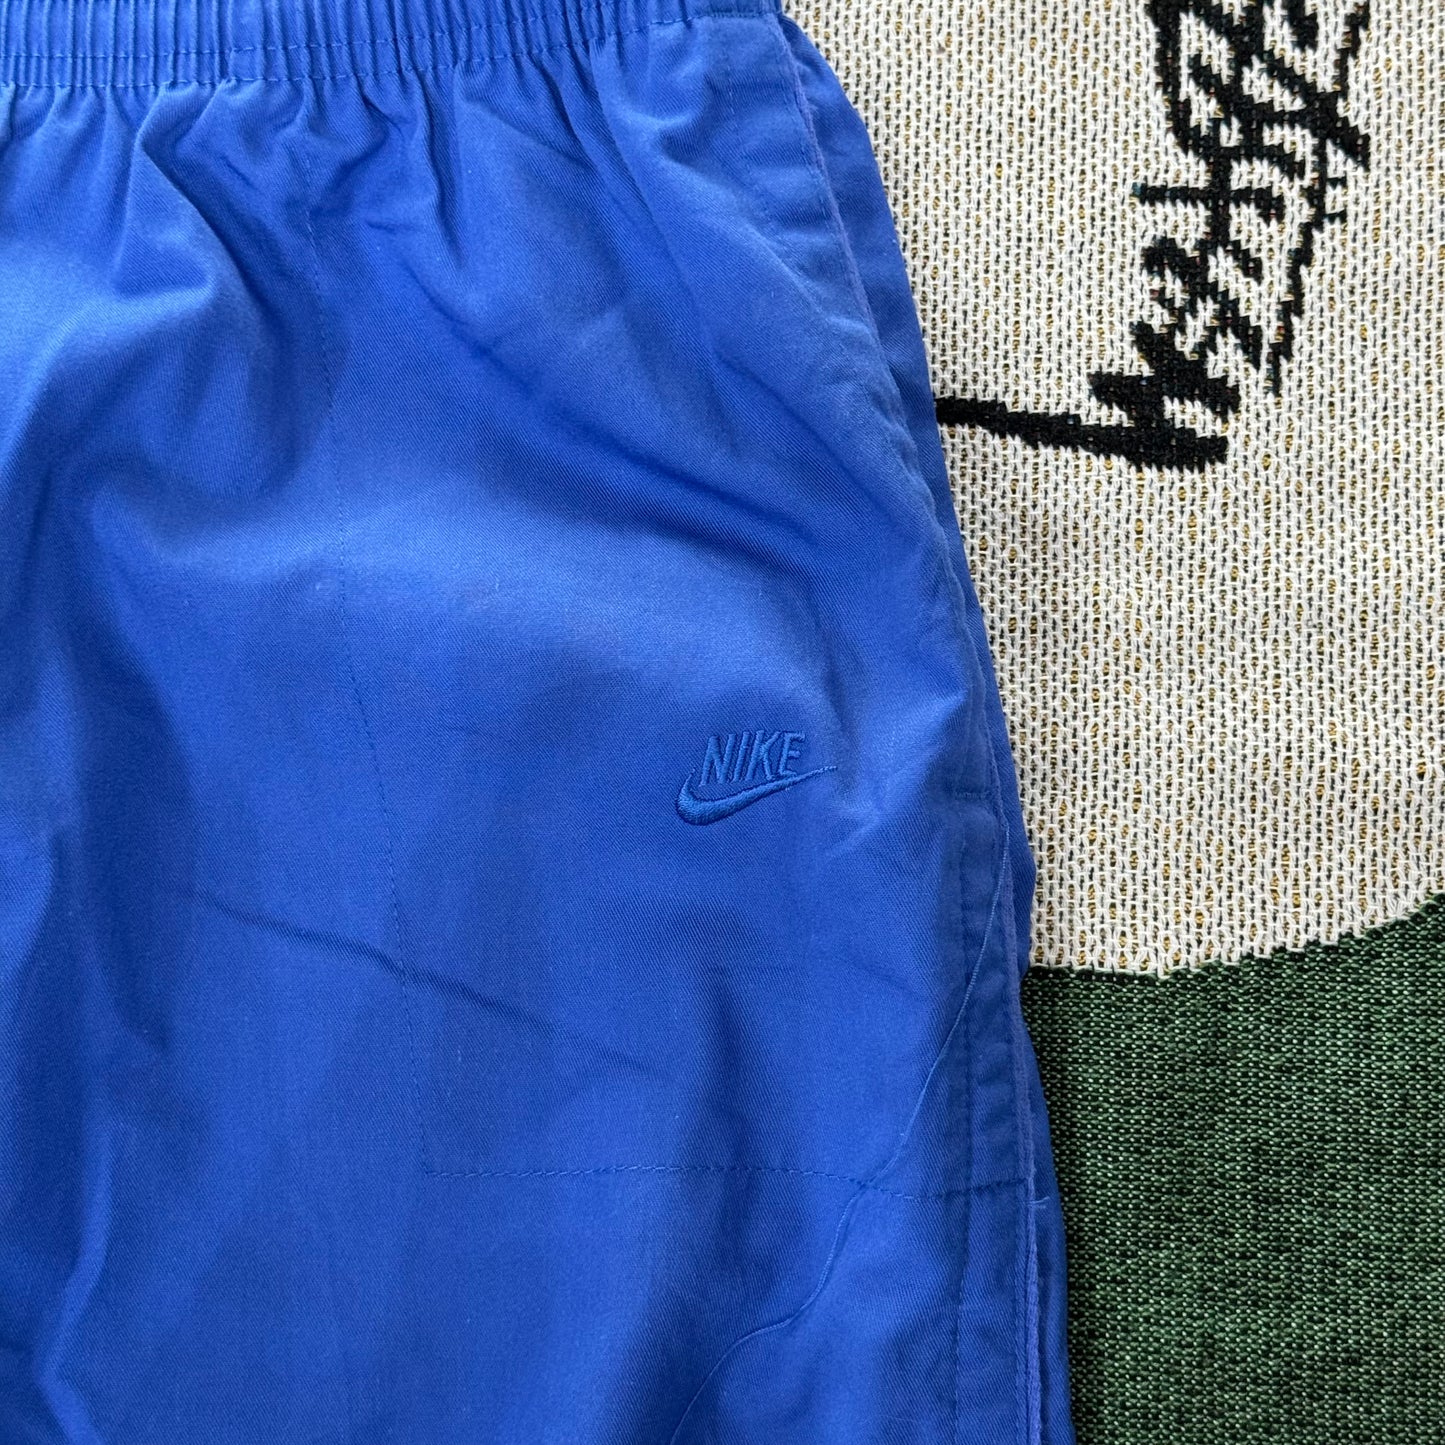 Vintage Nike Minispellouts  80's Logo Tonal Pants